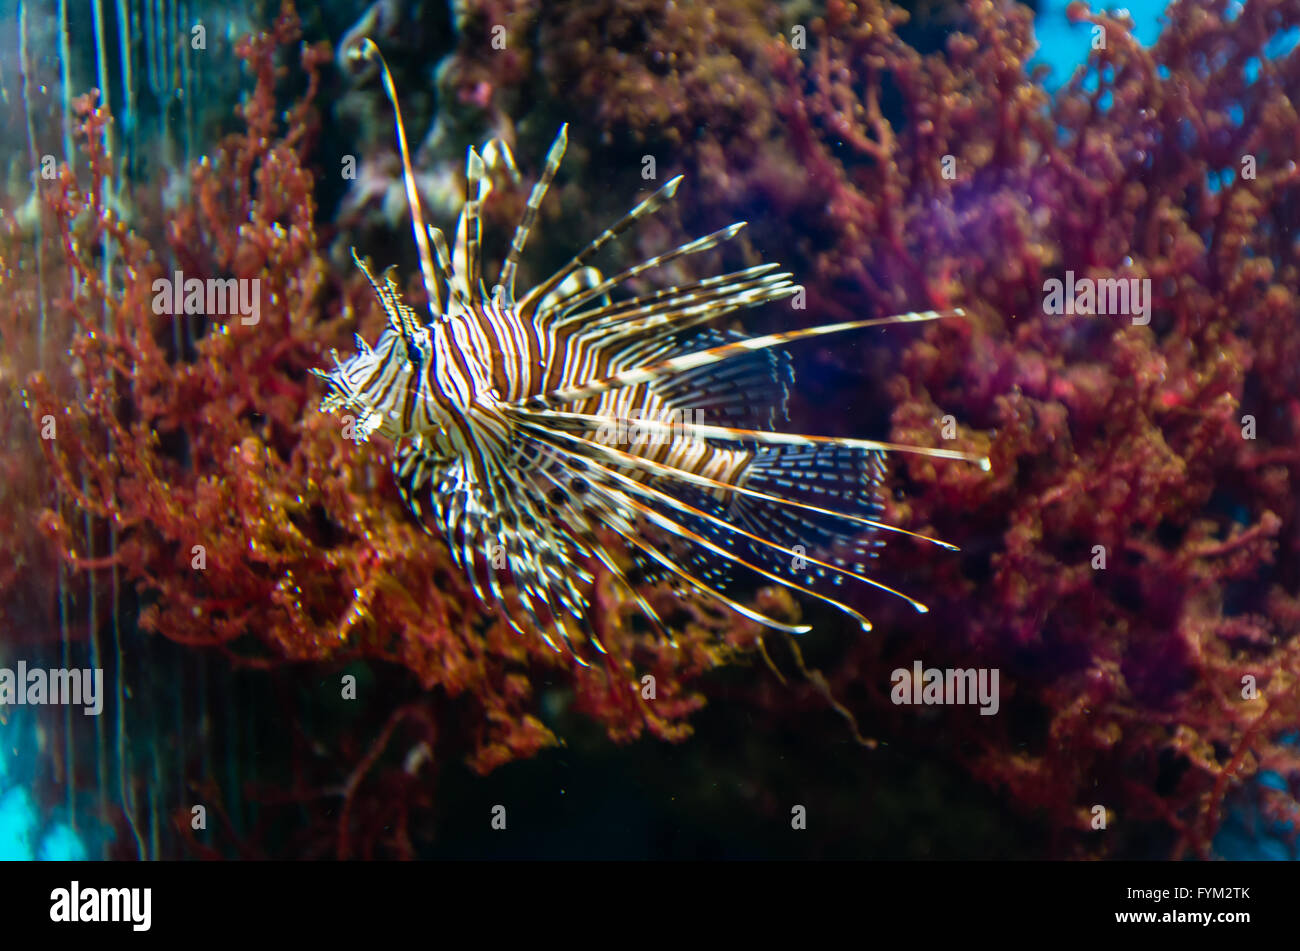 Exotische Korallen Fische im aquarium Stockfoto